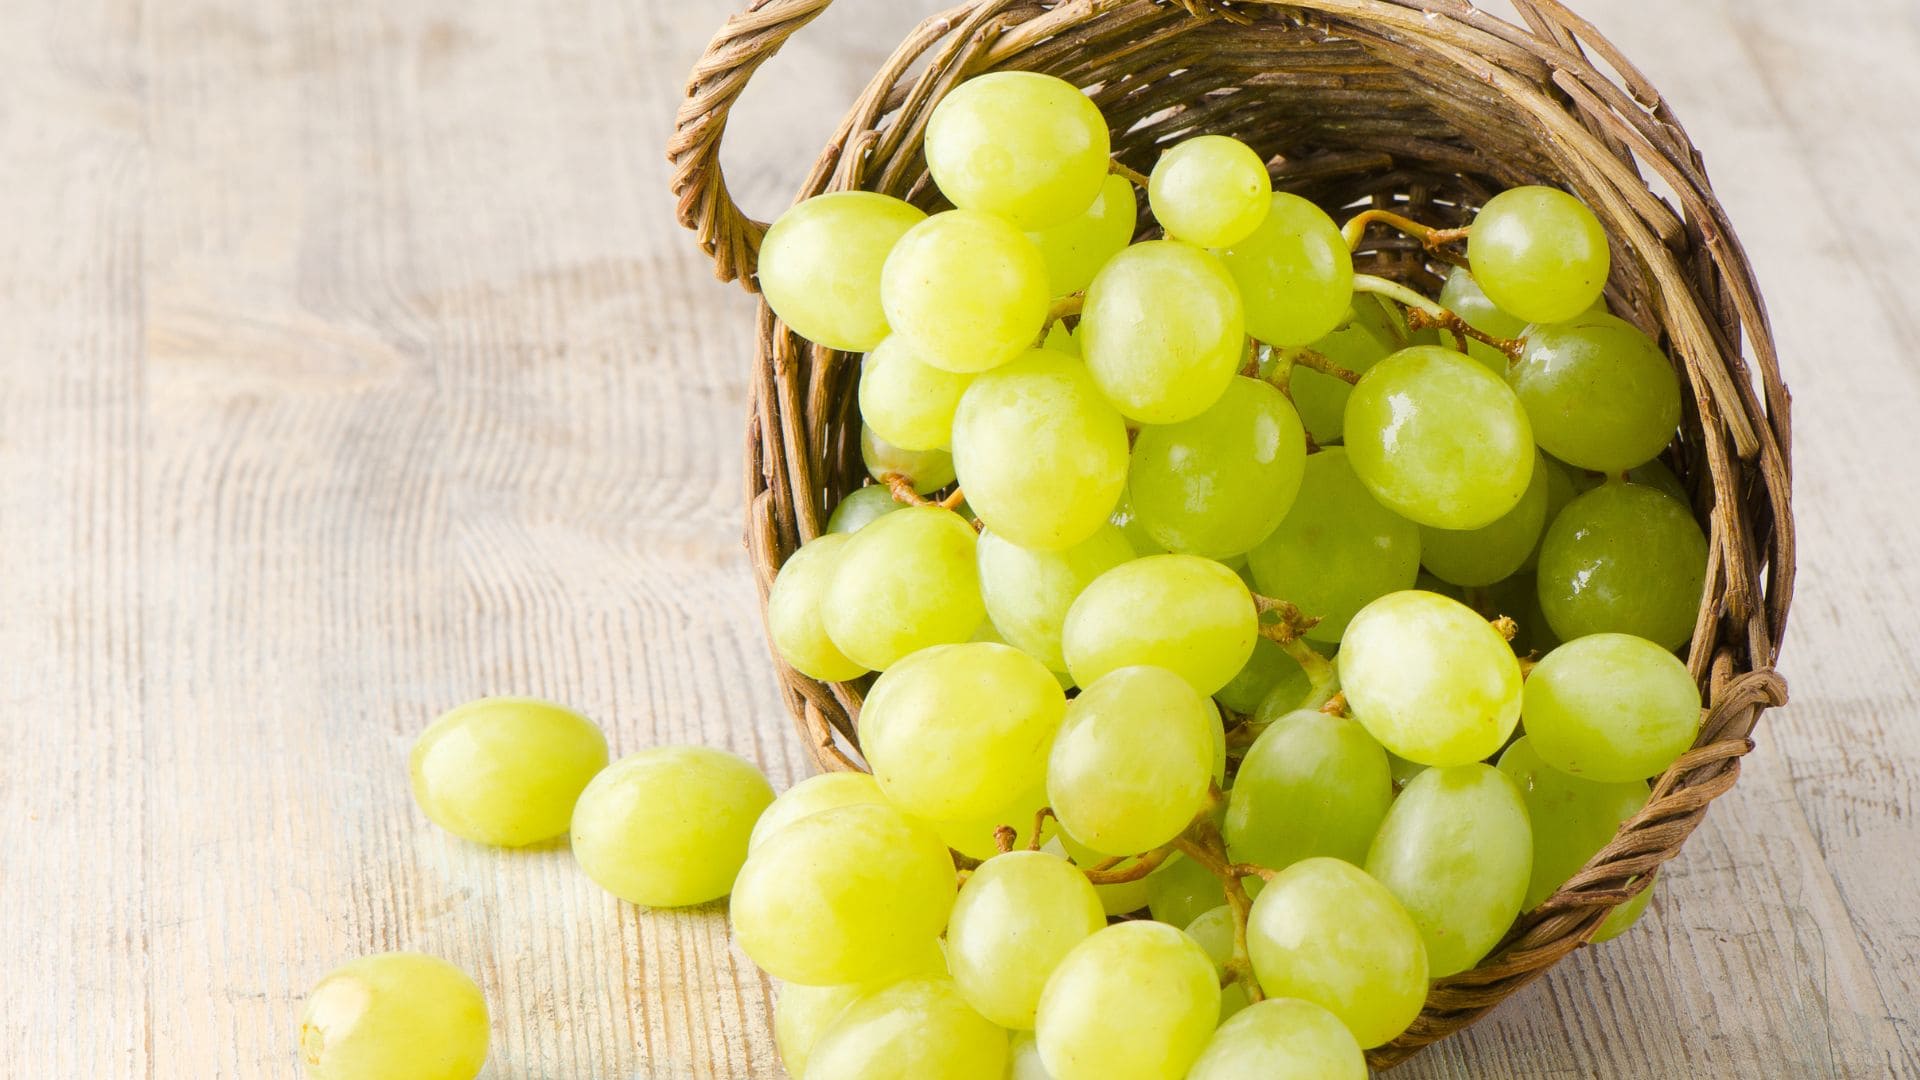 ¿Por qué se comen uvas en Nochevieja?